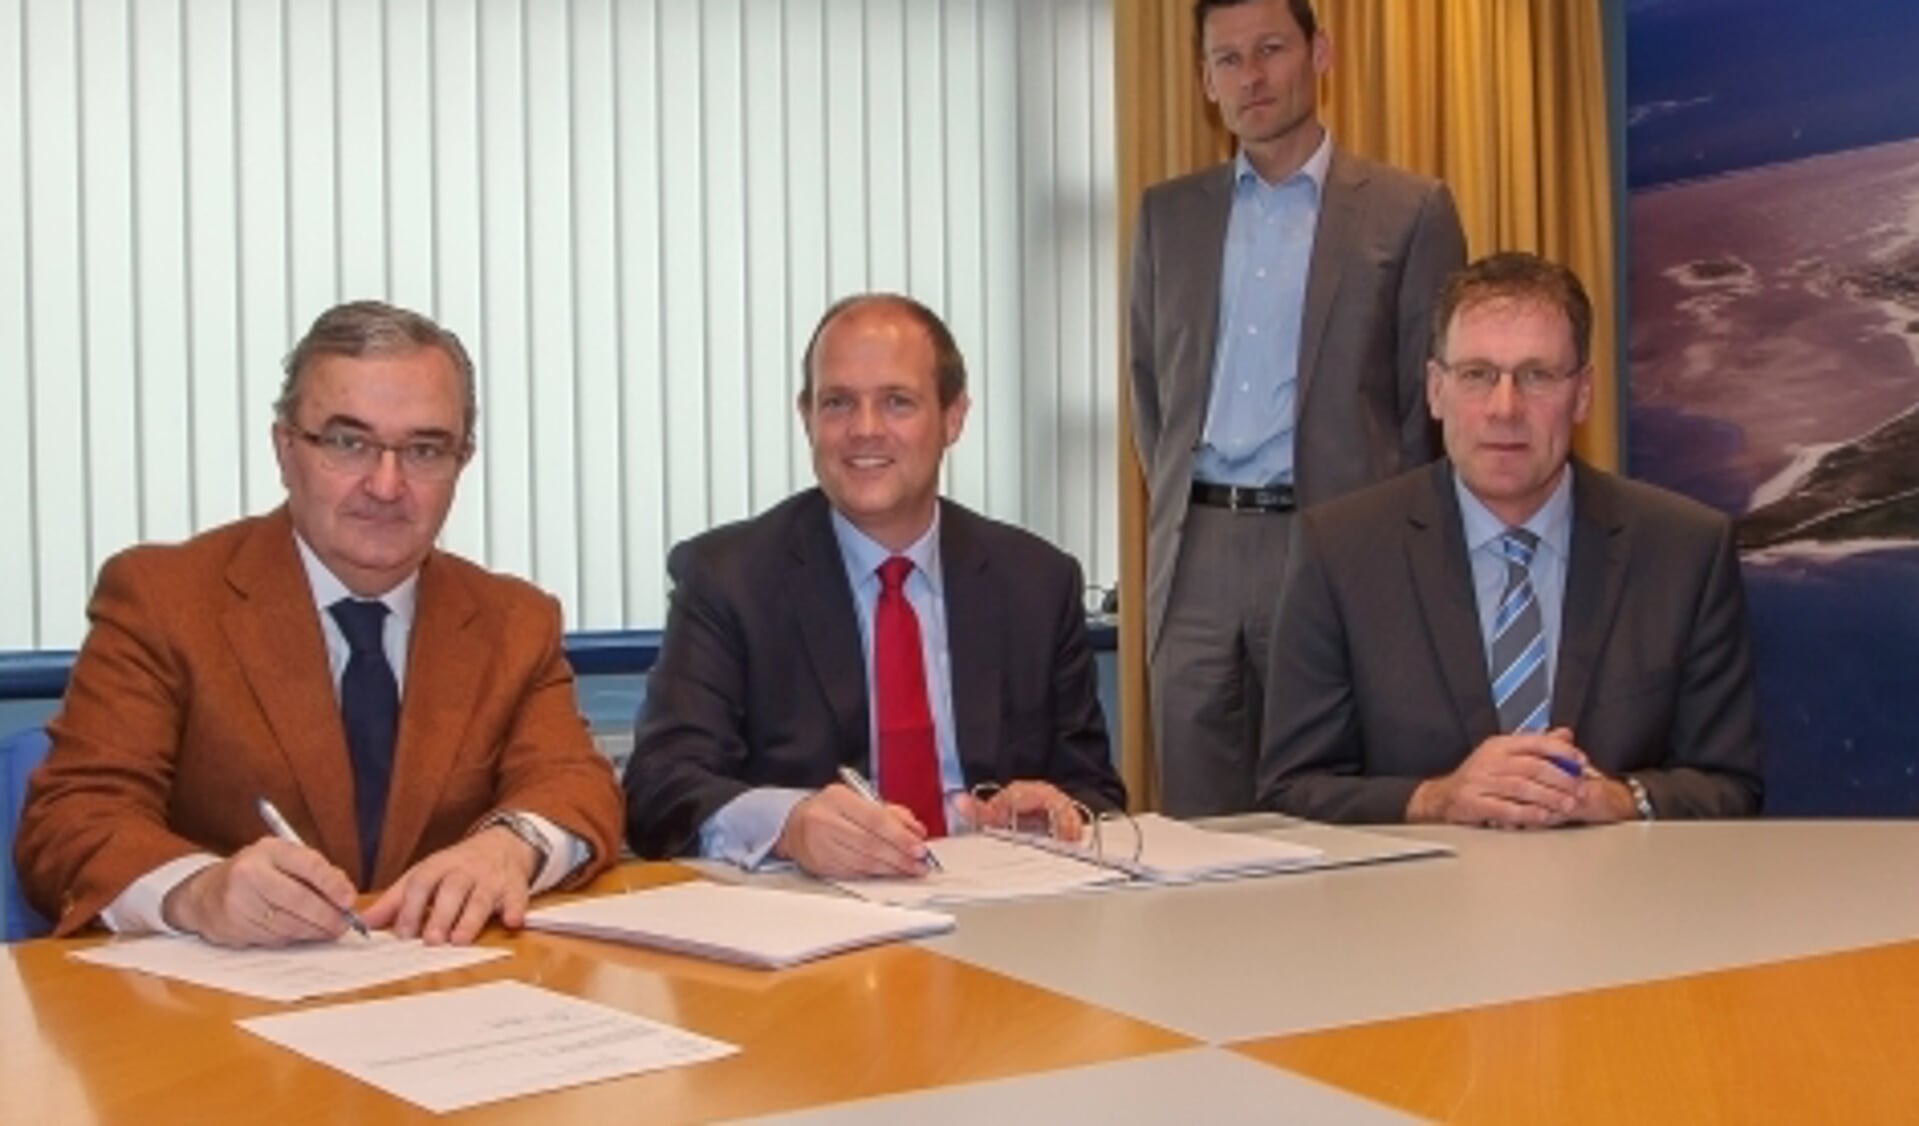 Franck van den Broeck (staand) bij de ondertekening van de contracten voor de bouw van de Texelstroom. (Foto Pieter de Vries)